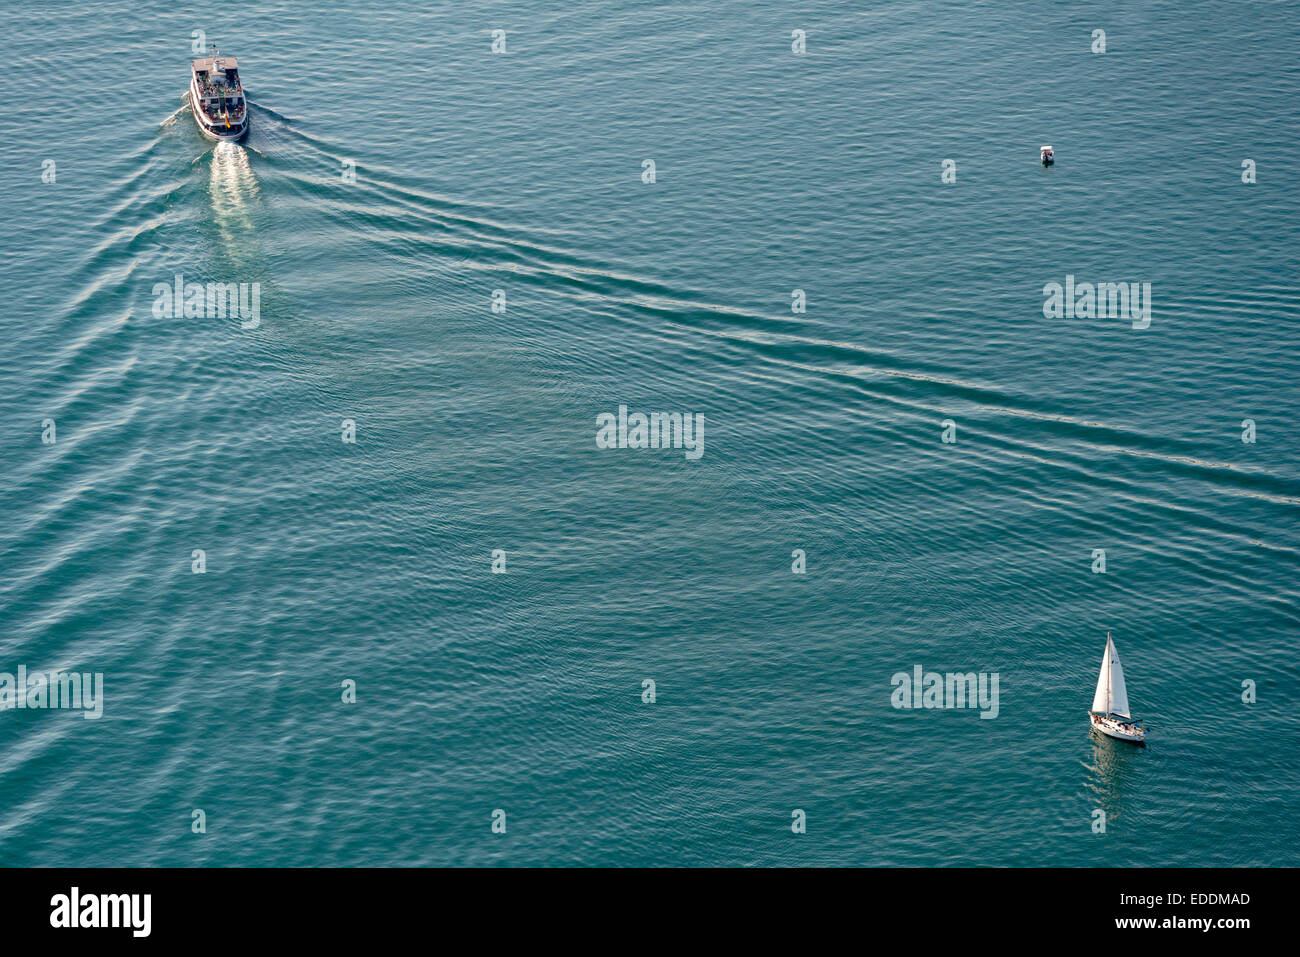 Germania Baden-Wuerttemberg, Lago di Costanza, veduta aerea della nave e barca a vela Foto Stock